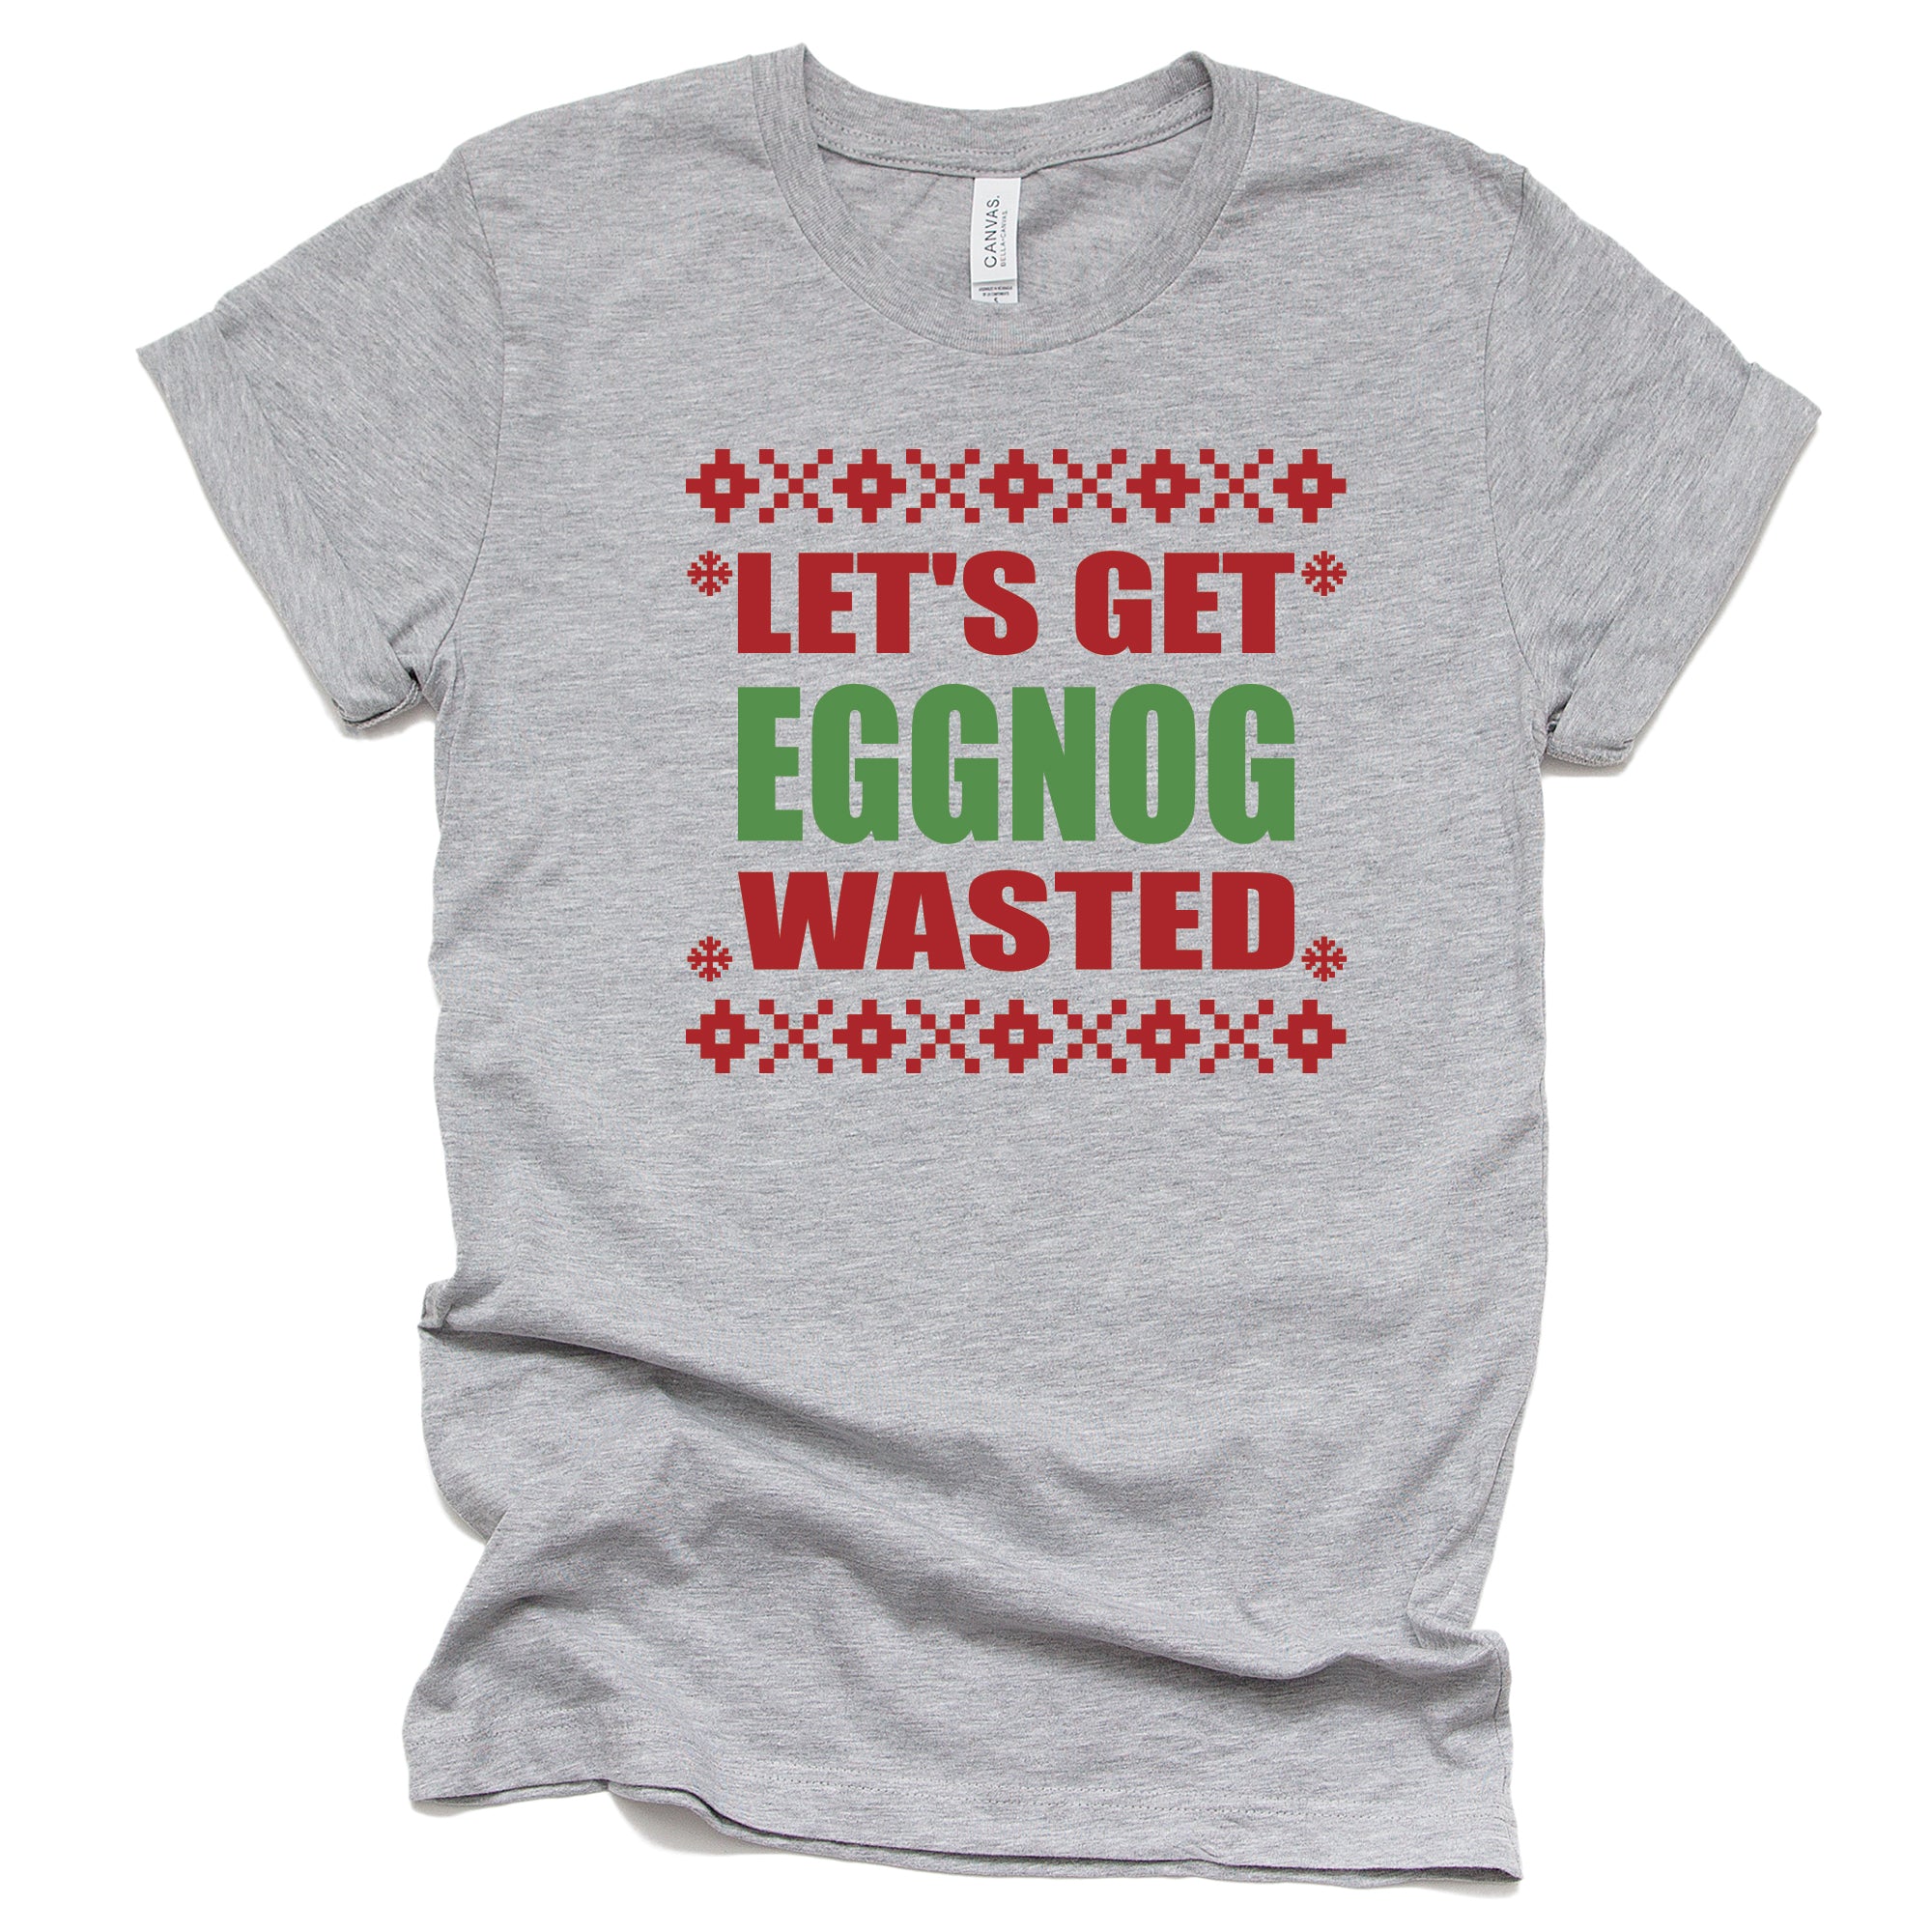 Let's Get Eggnog Wasted